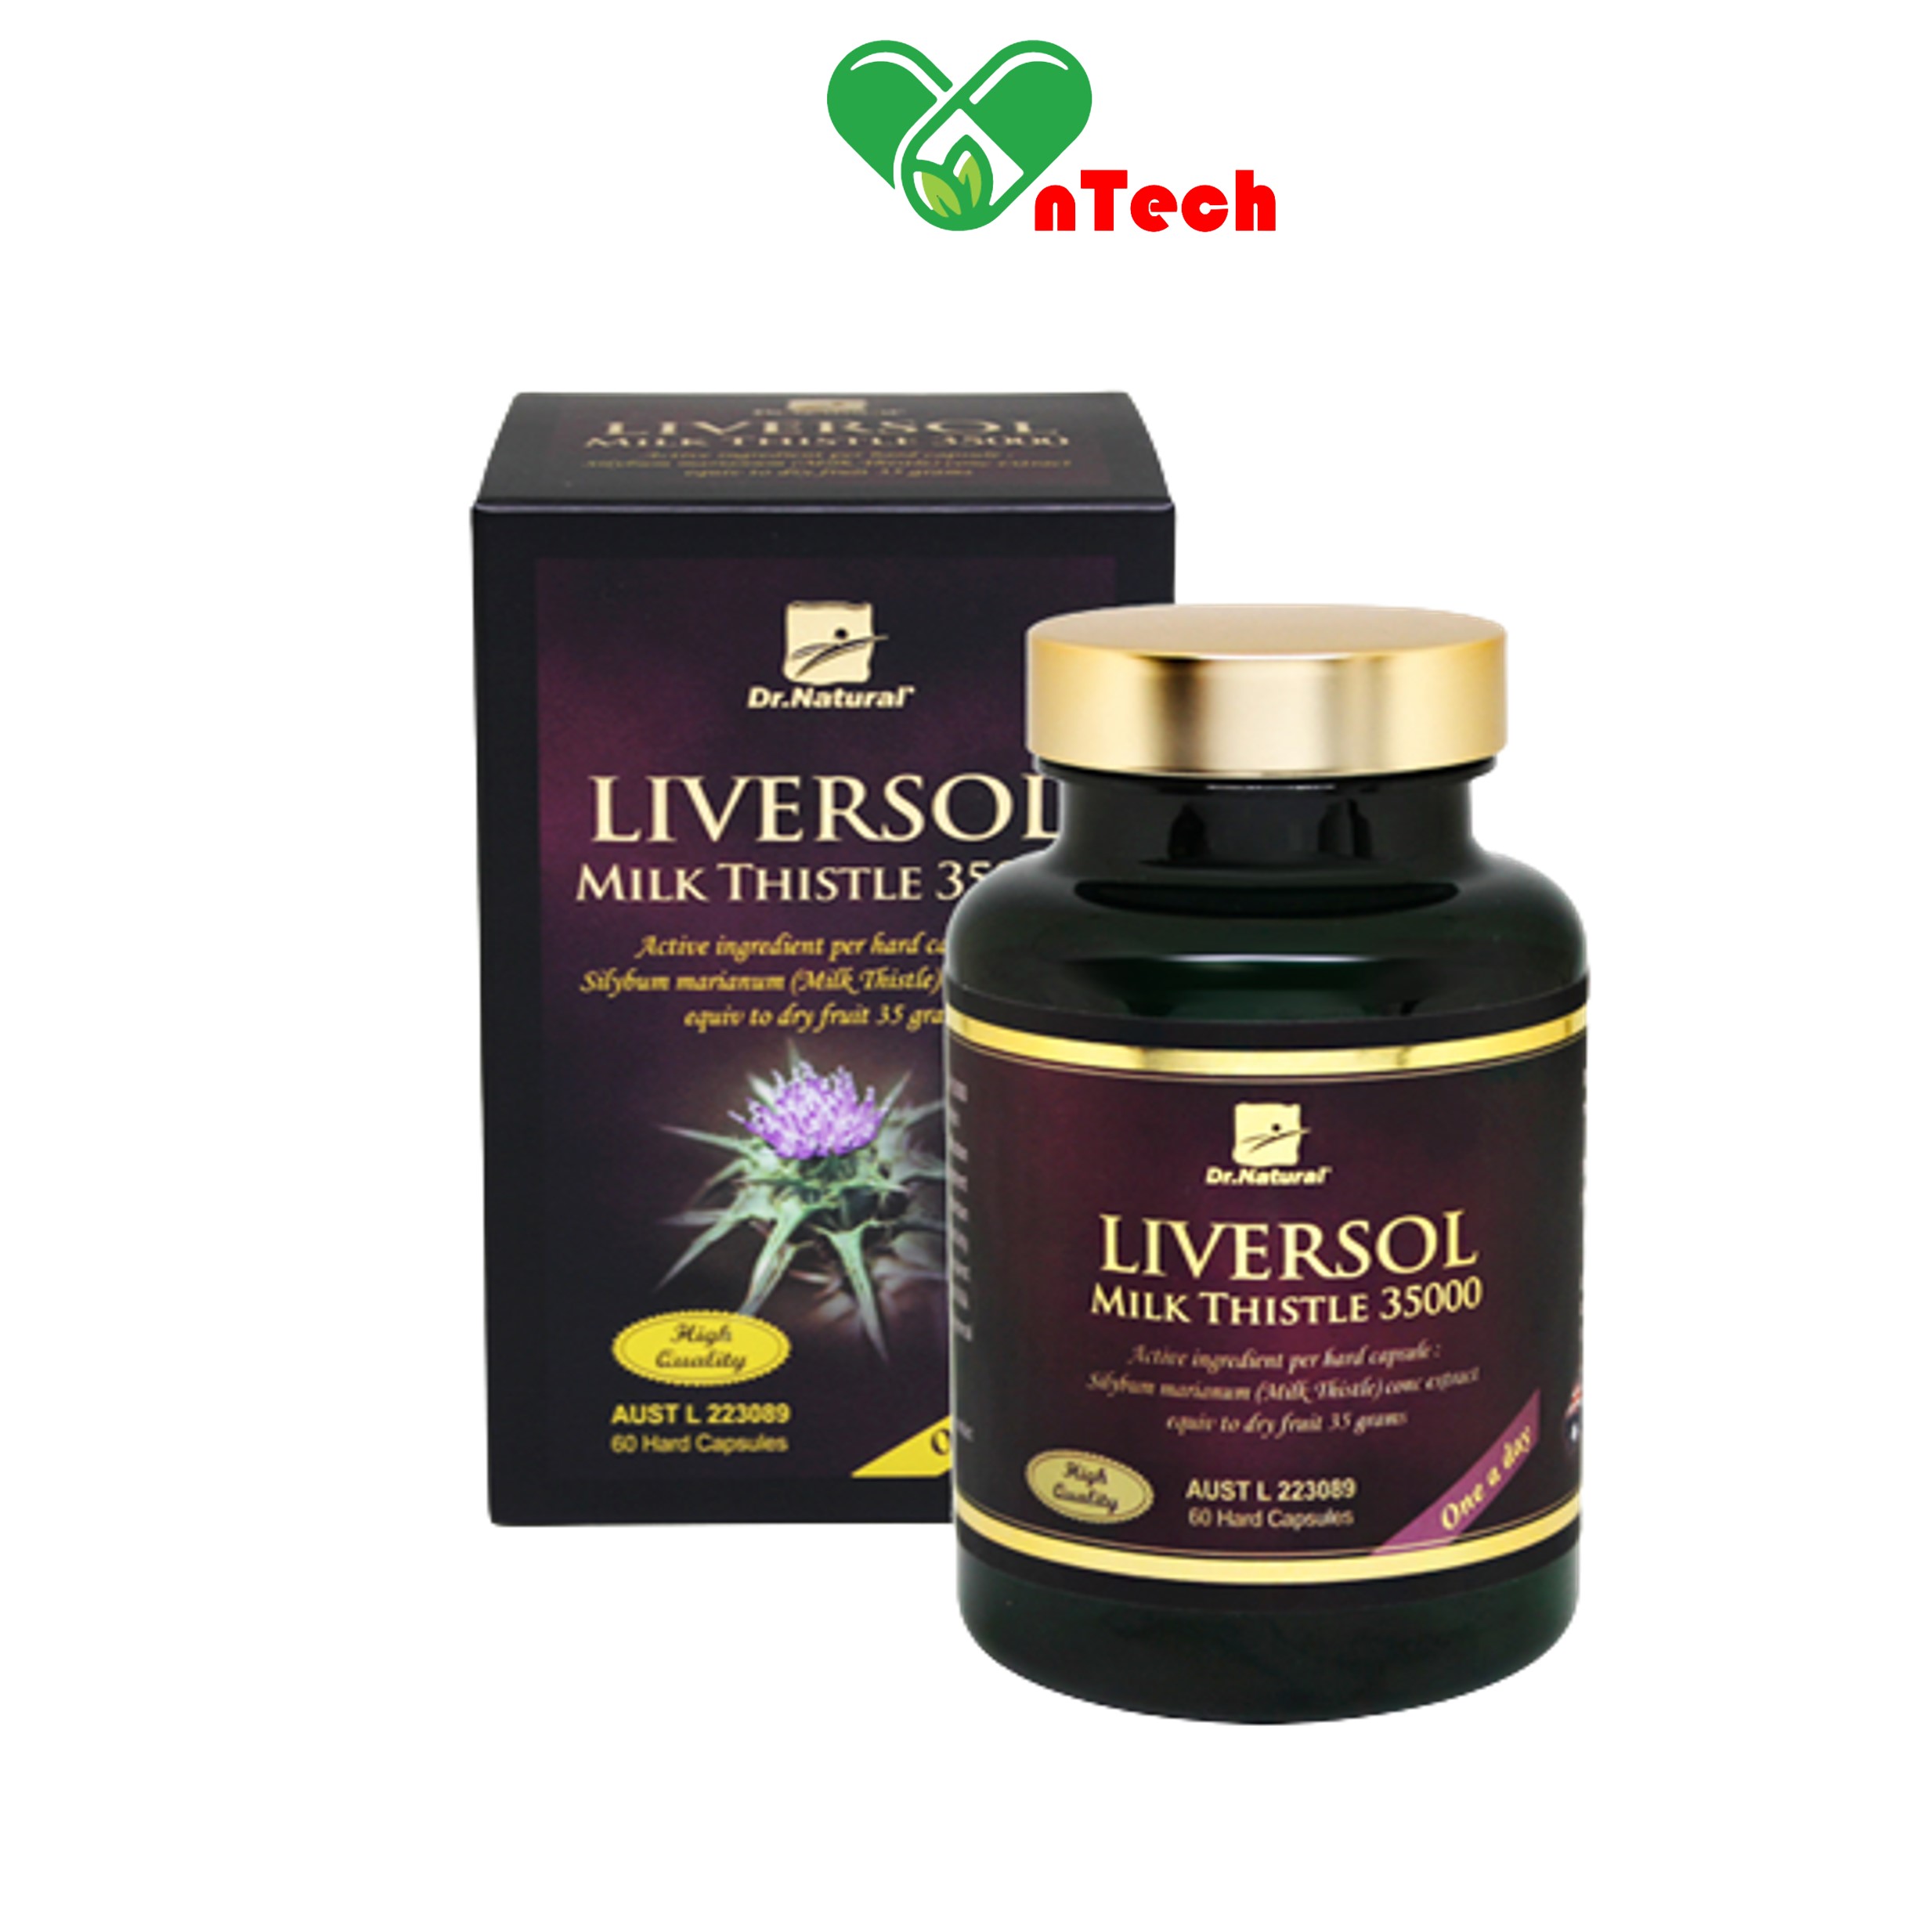 Viên uống bổ gan LiverSol Milk Thistle 35000 Tăng cường chức năng gan mát gan giải độc bảo vệ tế bào gan hàng nhập khẩu